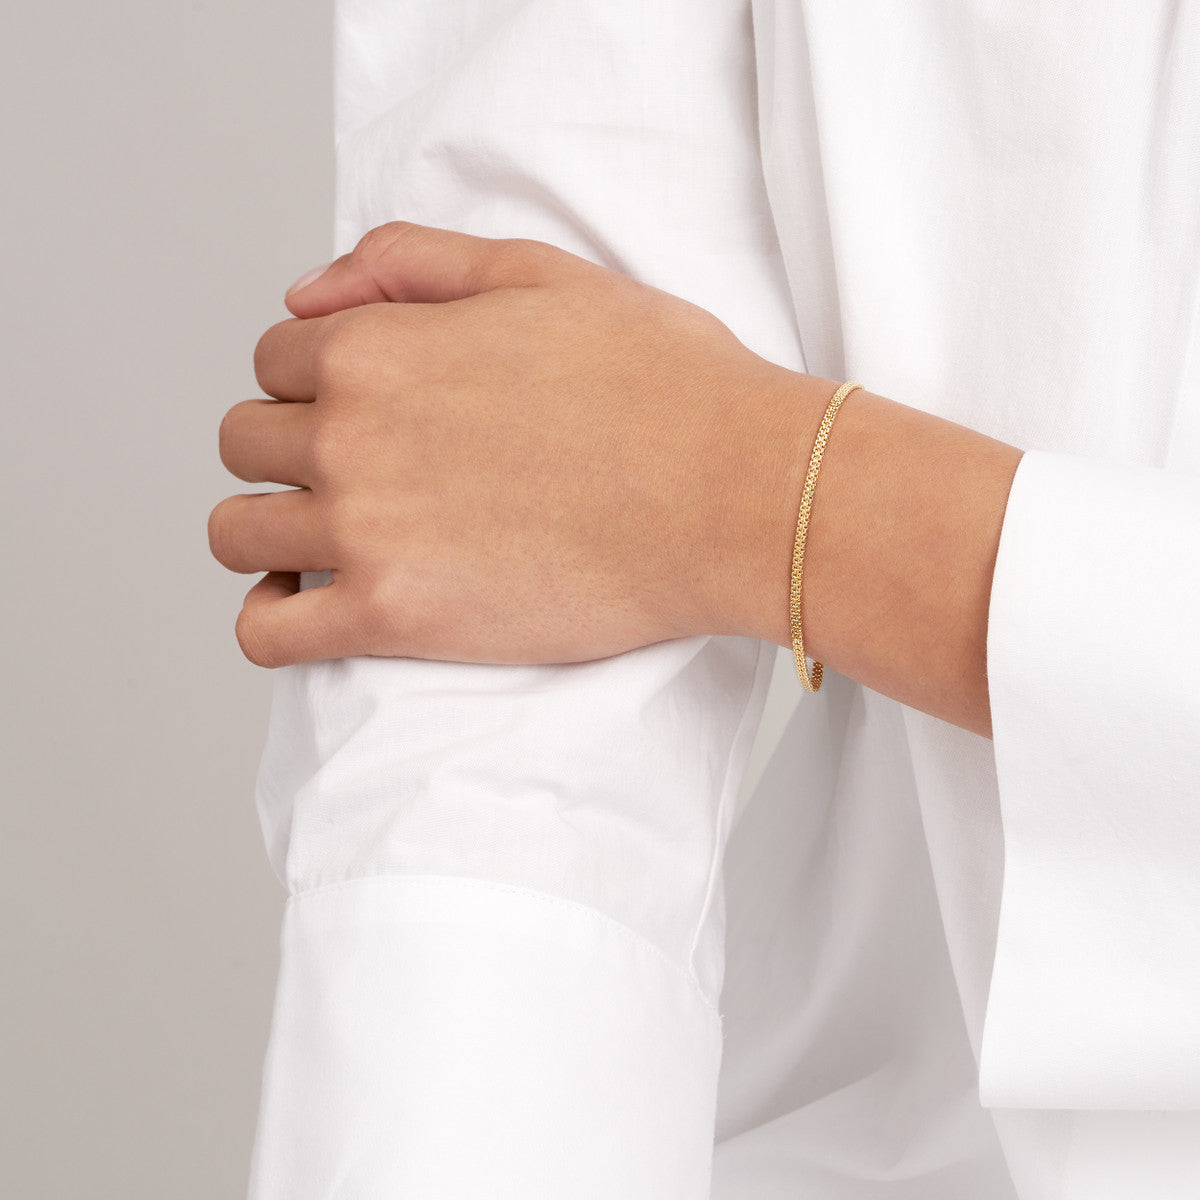 Bismark Chain Bracelet in 14K Gold on woman's wrist